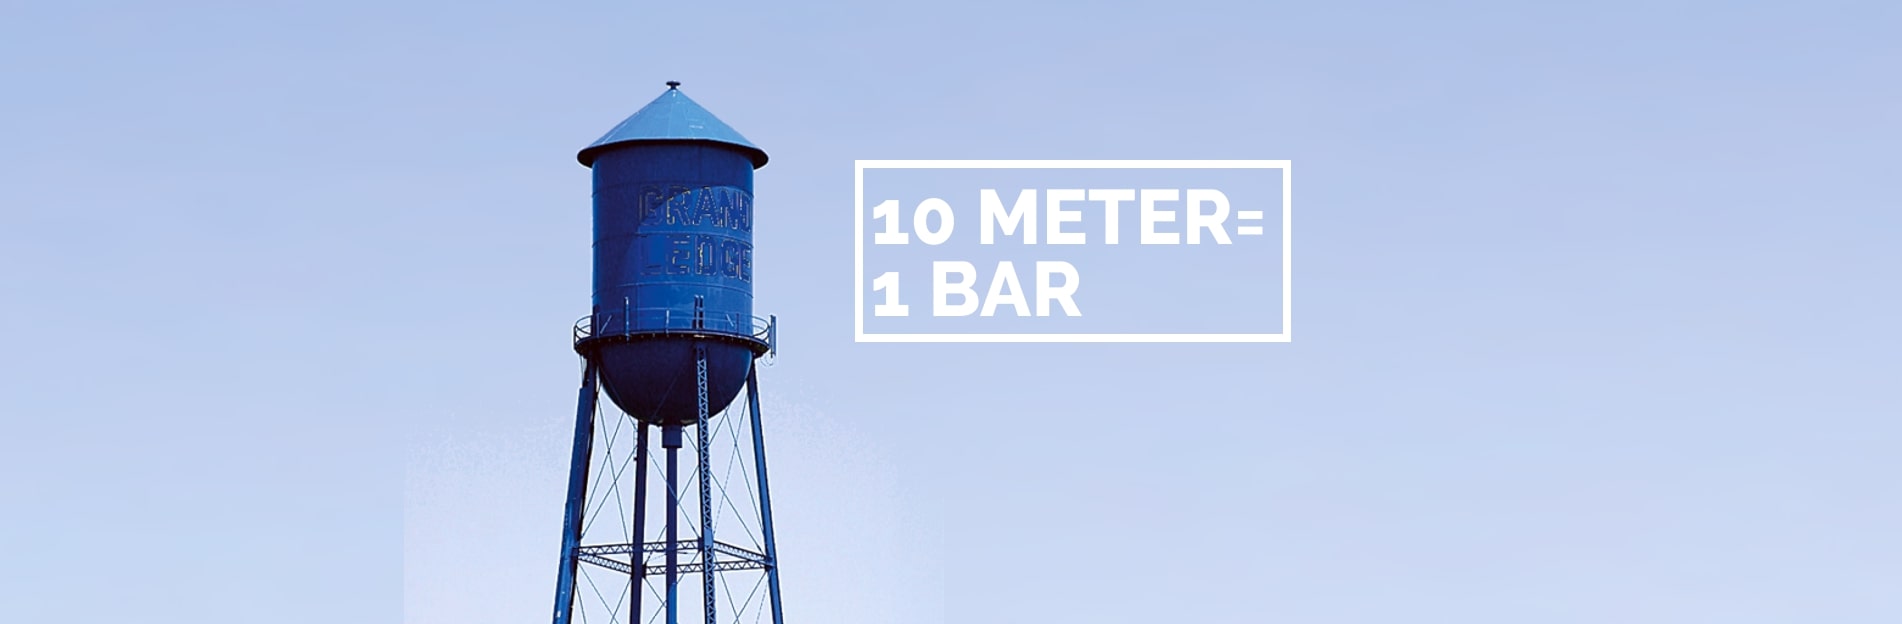 Ein freistehendes Wasserreservoir mit der Aufschrift: 10 Meter = 1 Bar